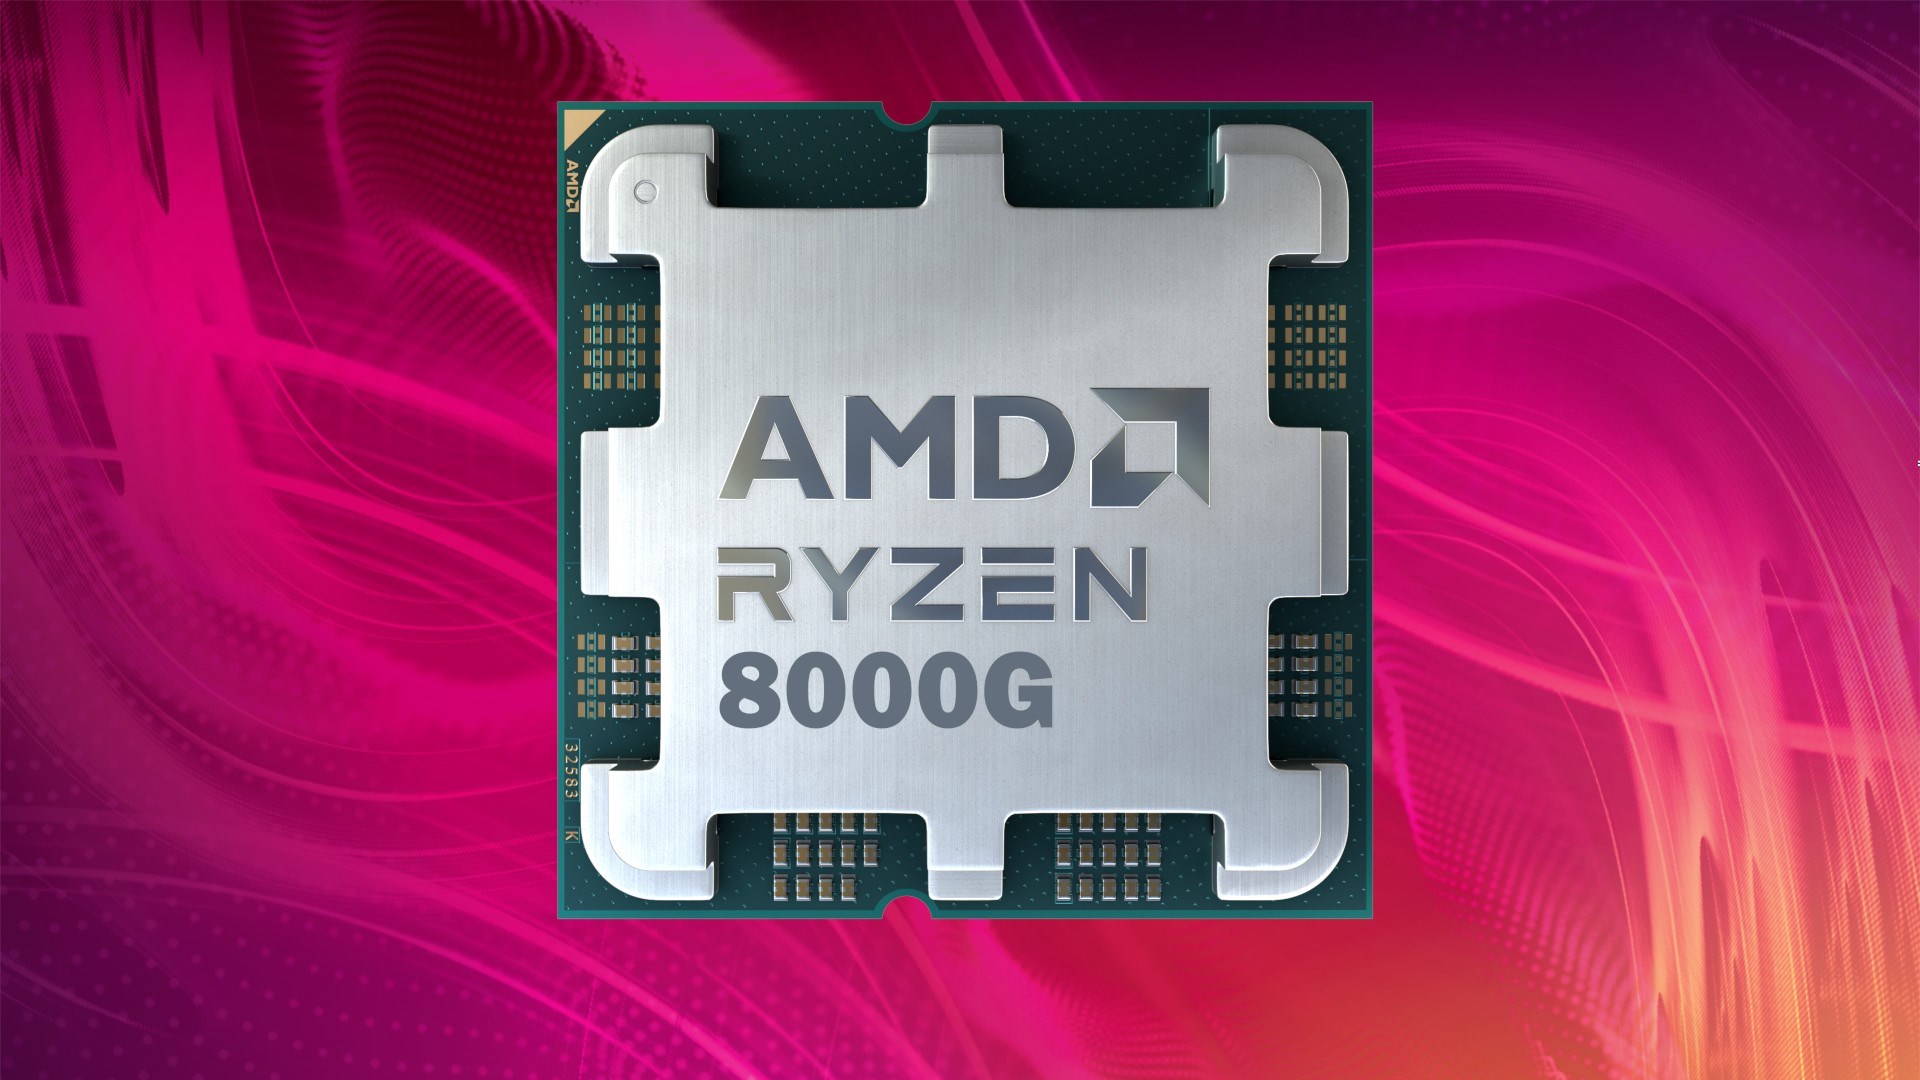 AMD Ryzen 8000G APU'lar için ilk fiyat bilgisi paylaşıldı